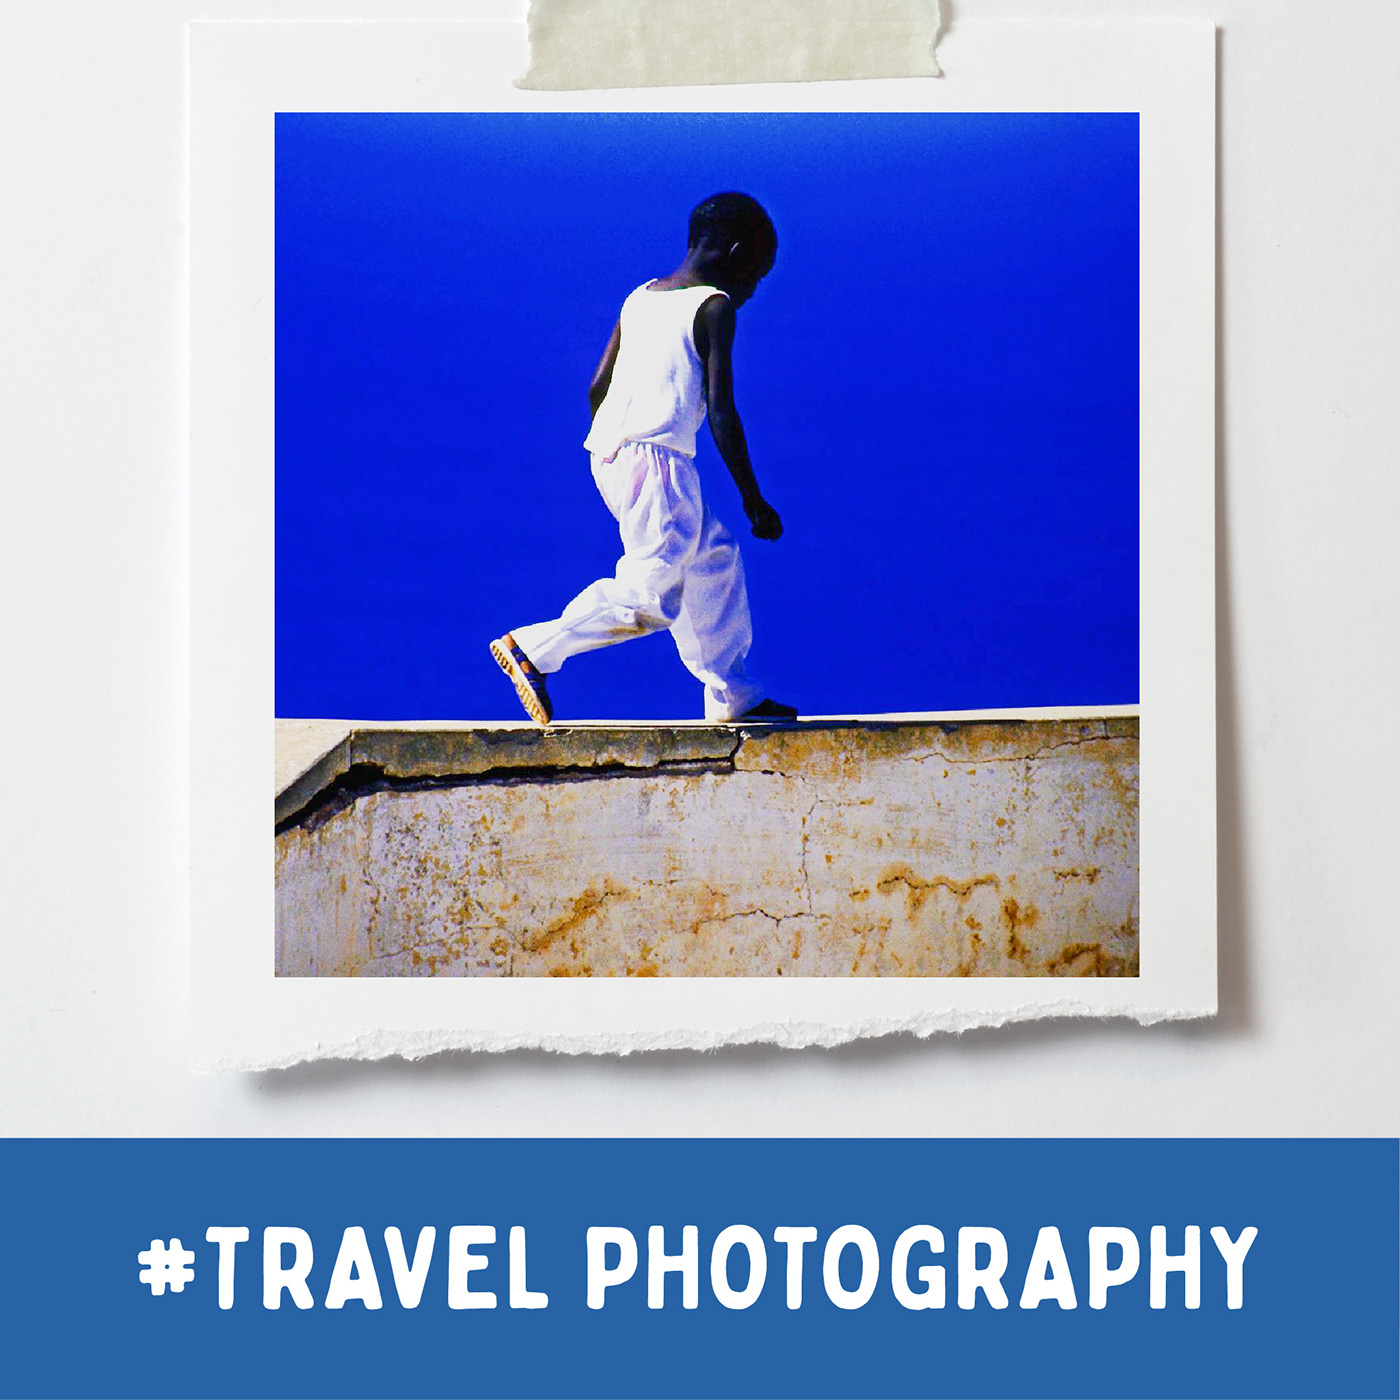 Travel Photography / Photographer: ©Tomás Sastre (Brassens Studio)